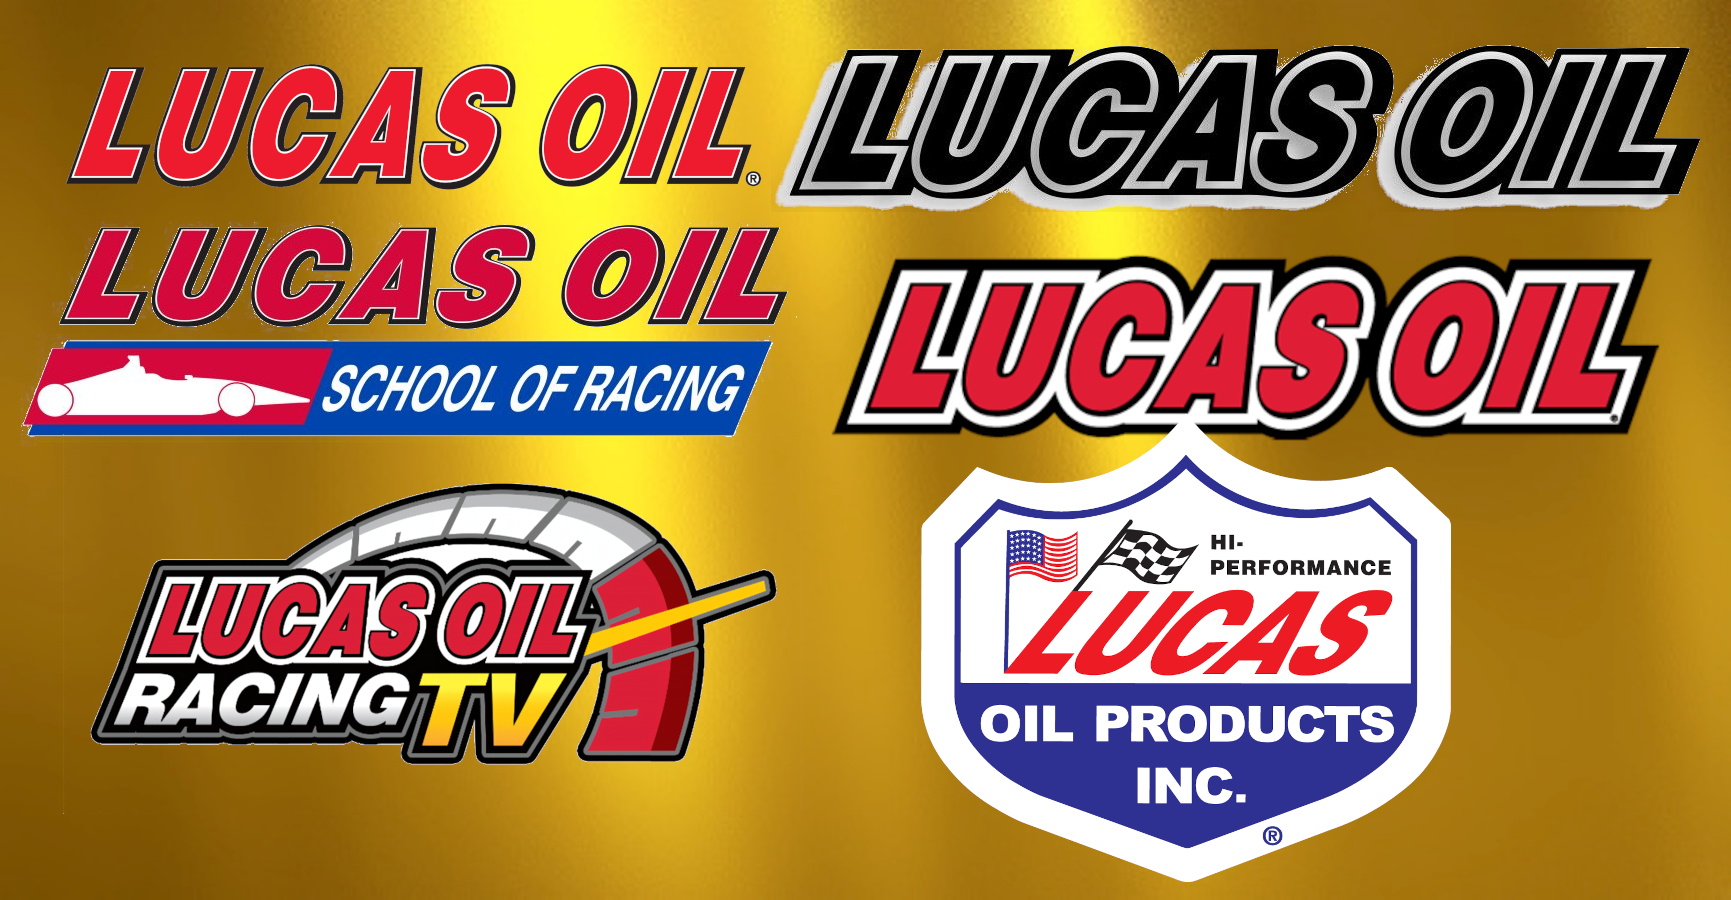 Locus oil logos.jpg